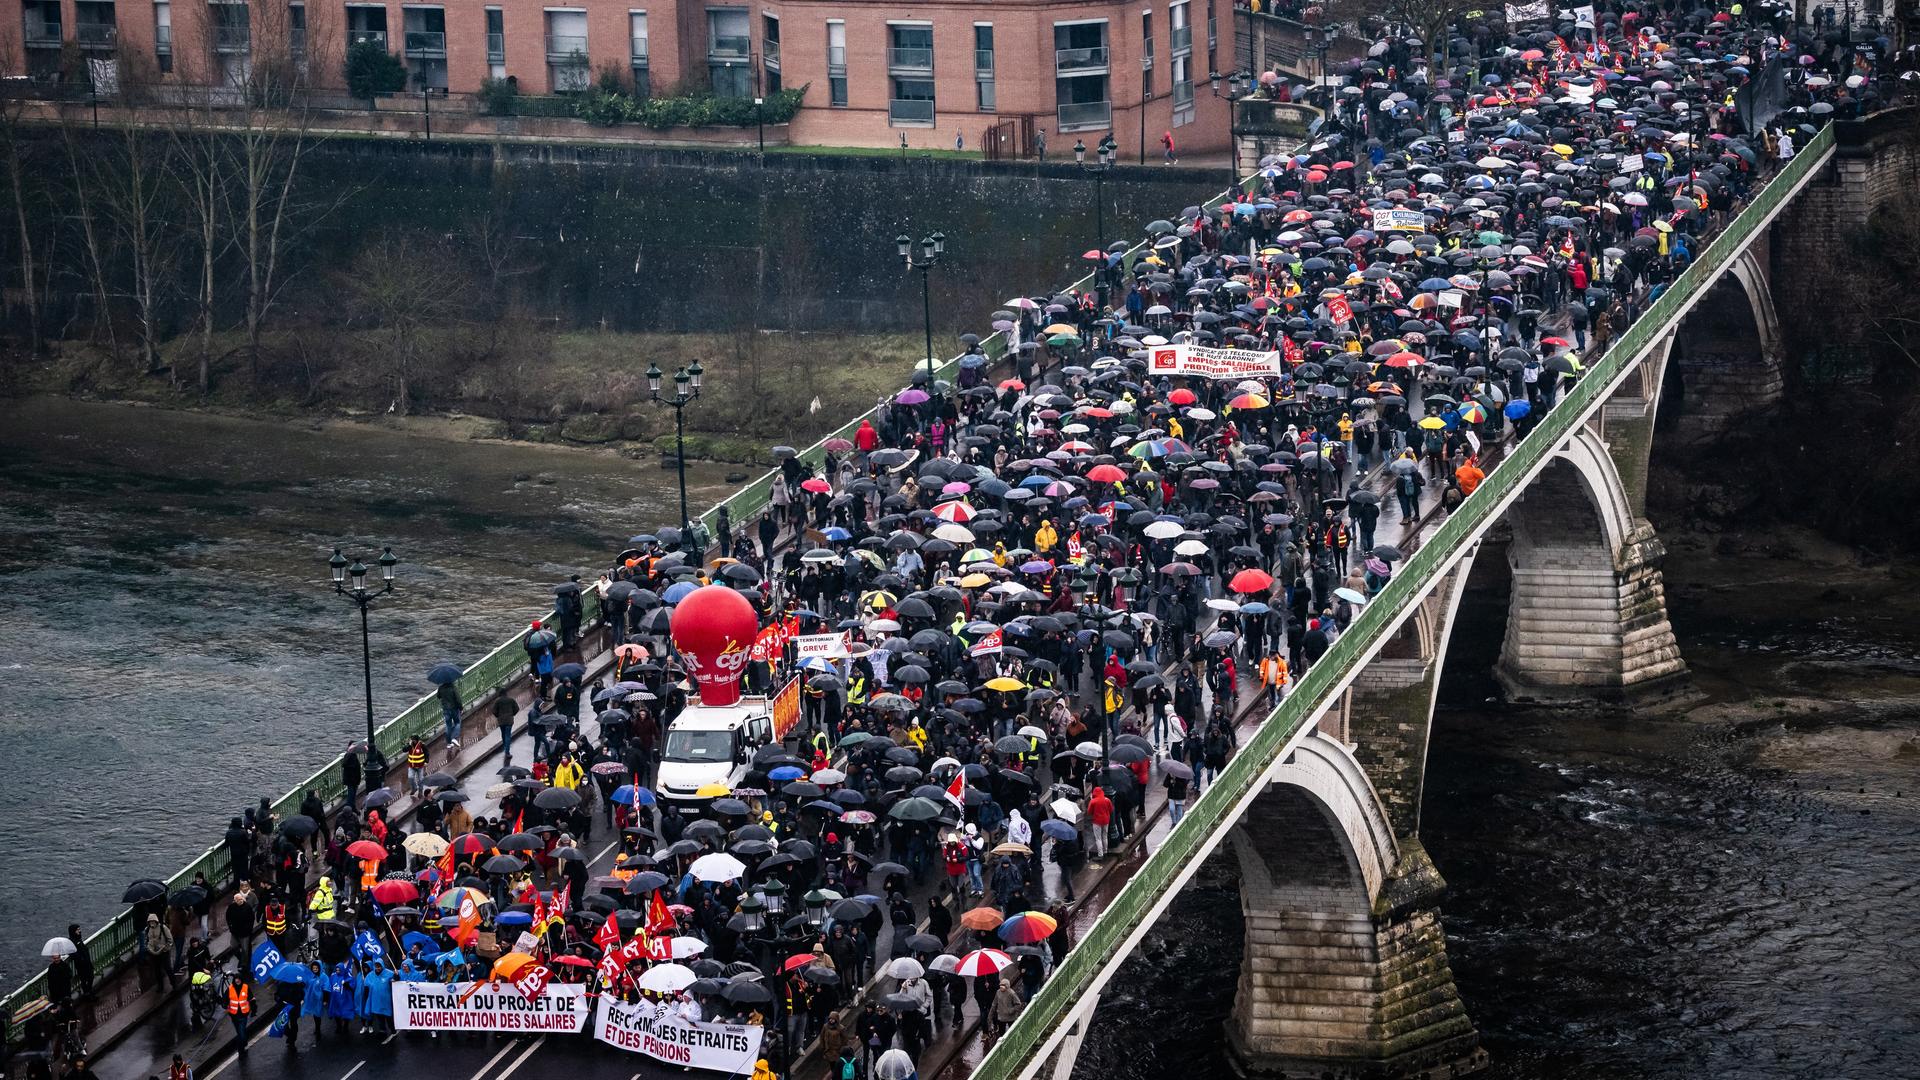 Das Foto zeigt eine Kundgebung gegen die Rentenreform in Toulouse. Viele Menschen mit Regenschirmen gehen über eine Brücke.